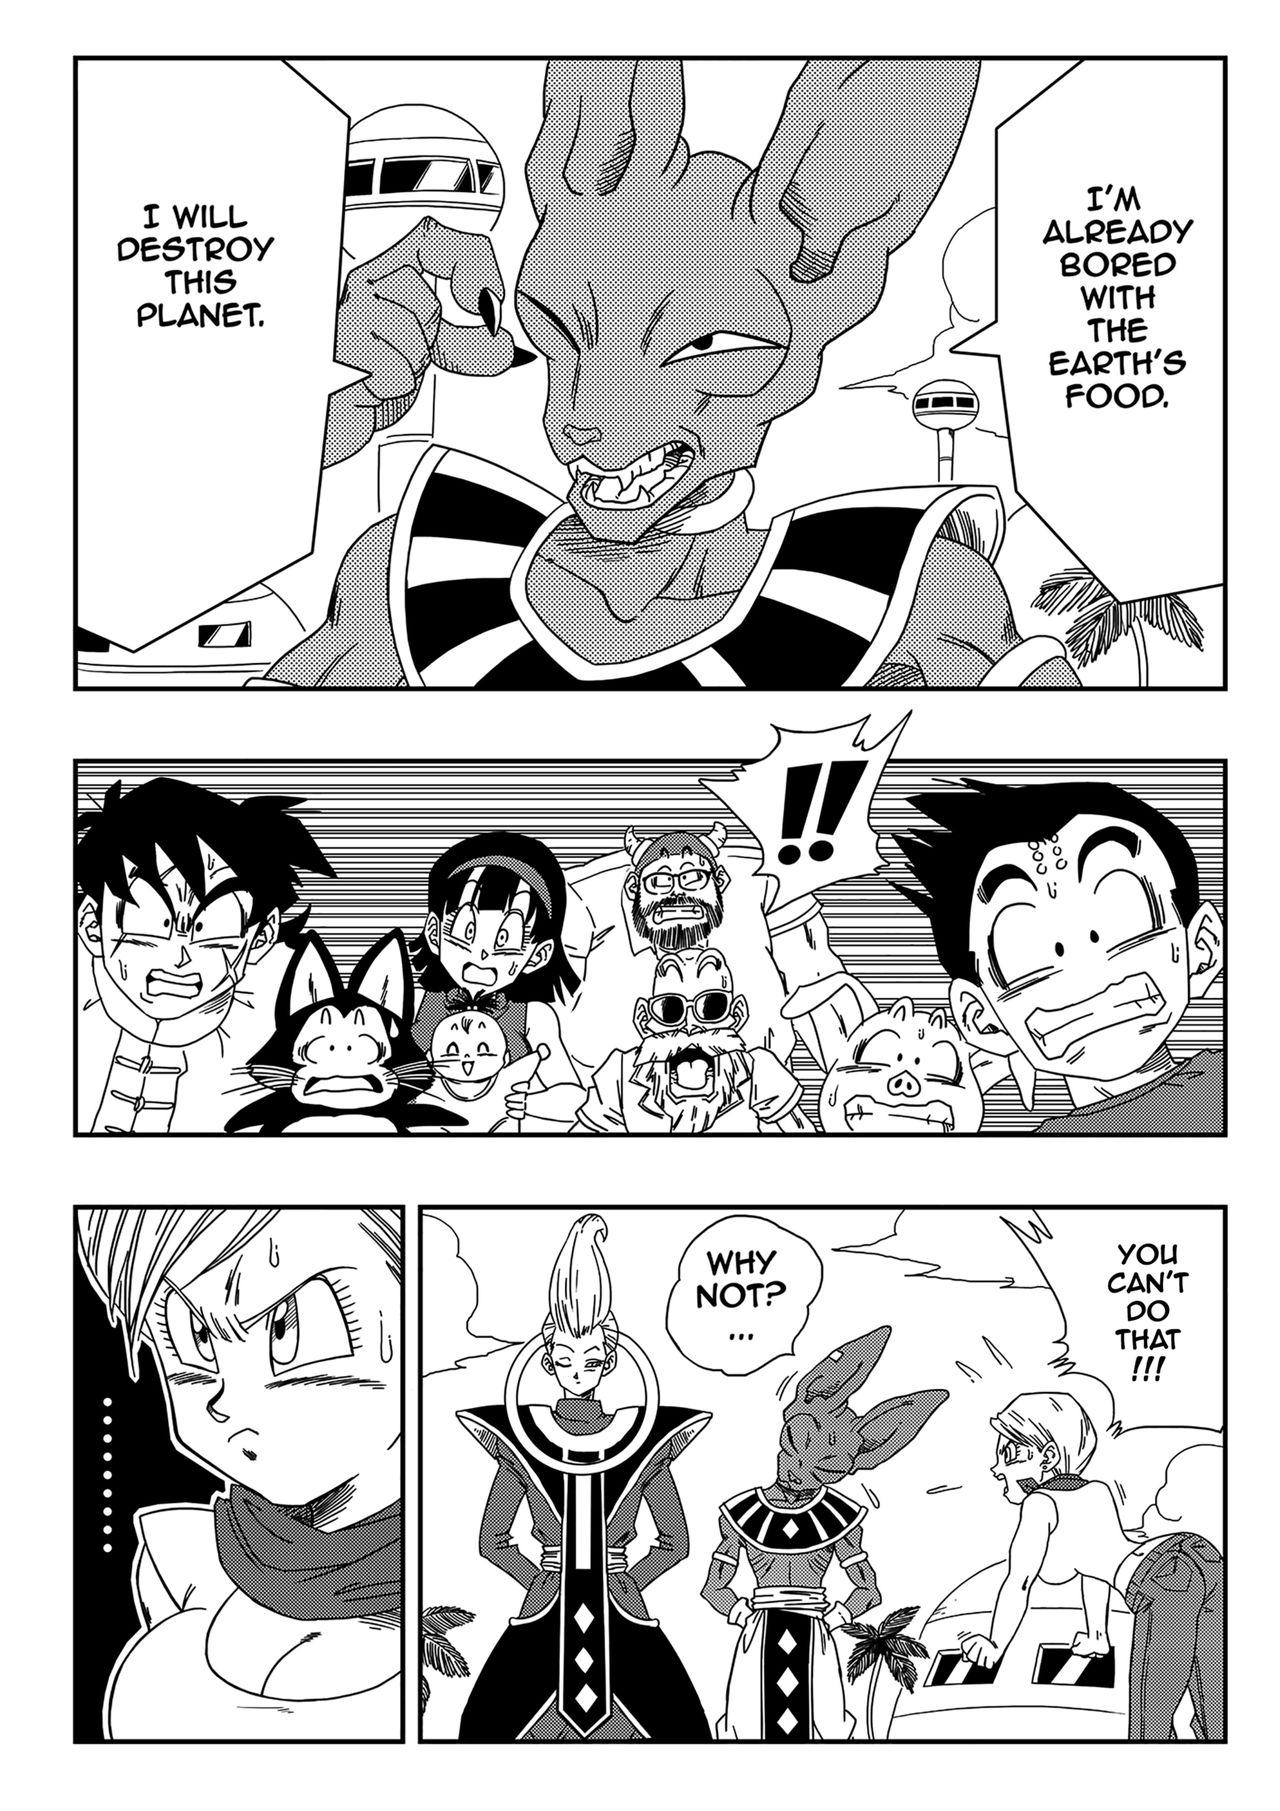 Blowjob Bulma Saves The Earth! - Dragon ball Bro - Page 3